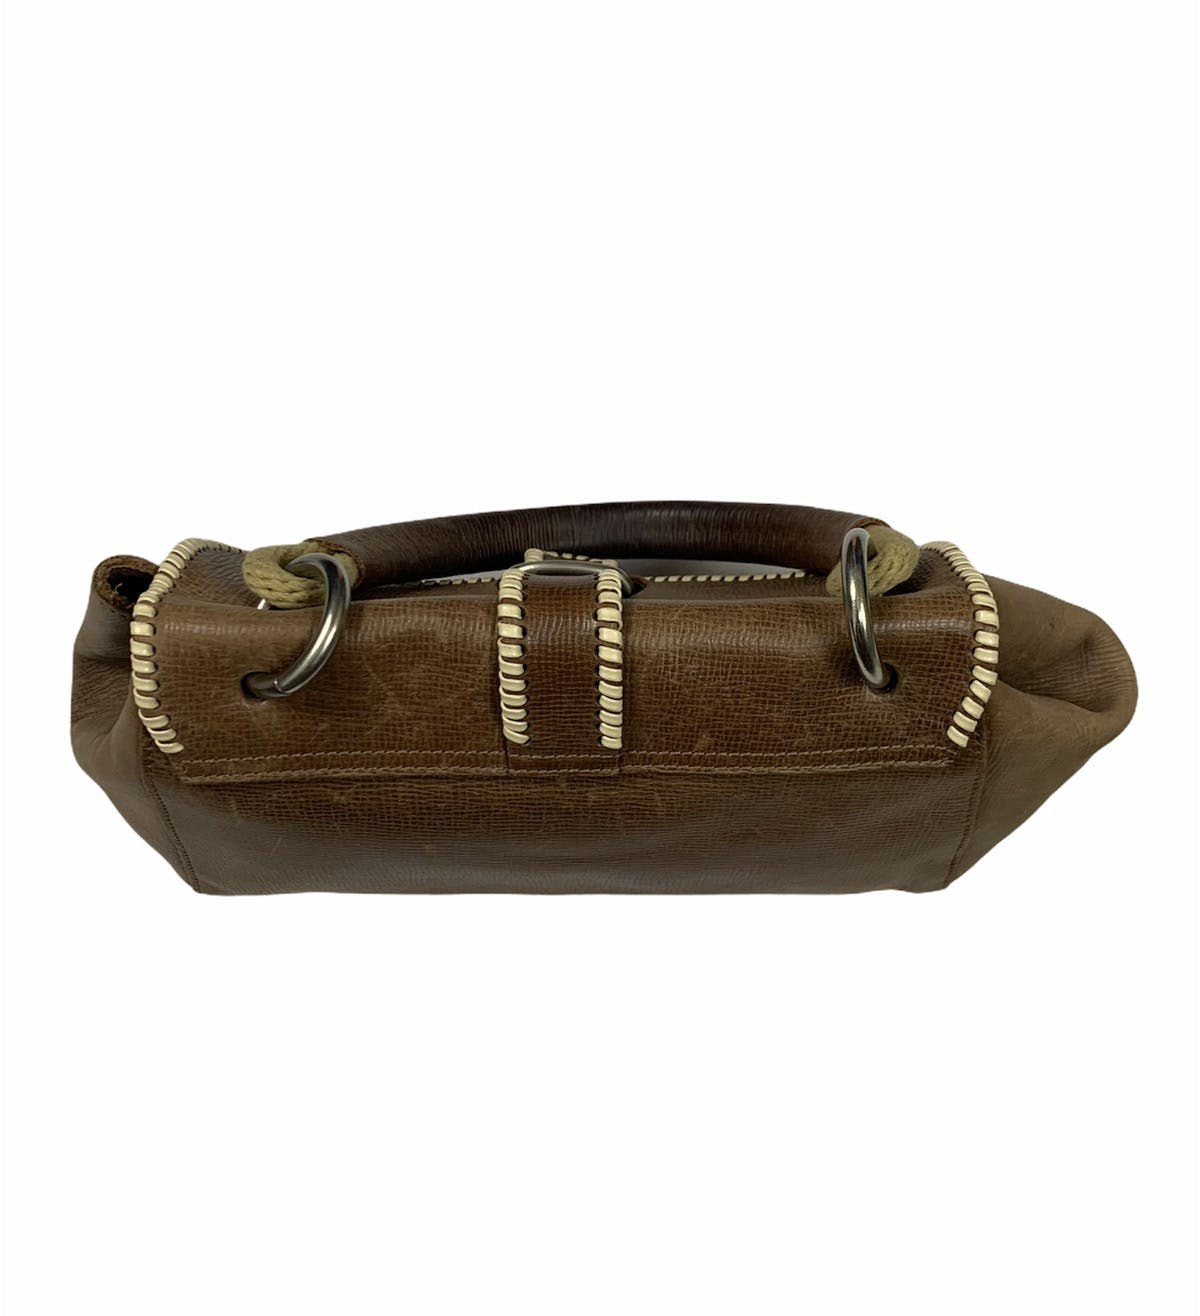 Marni leather handbag - 5